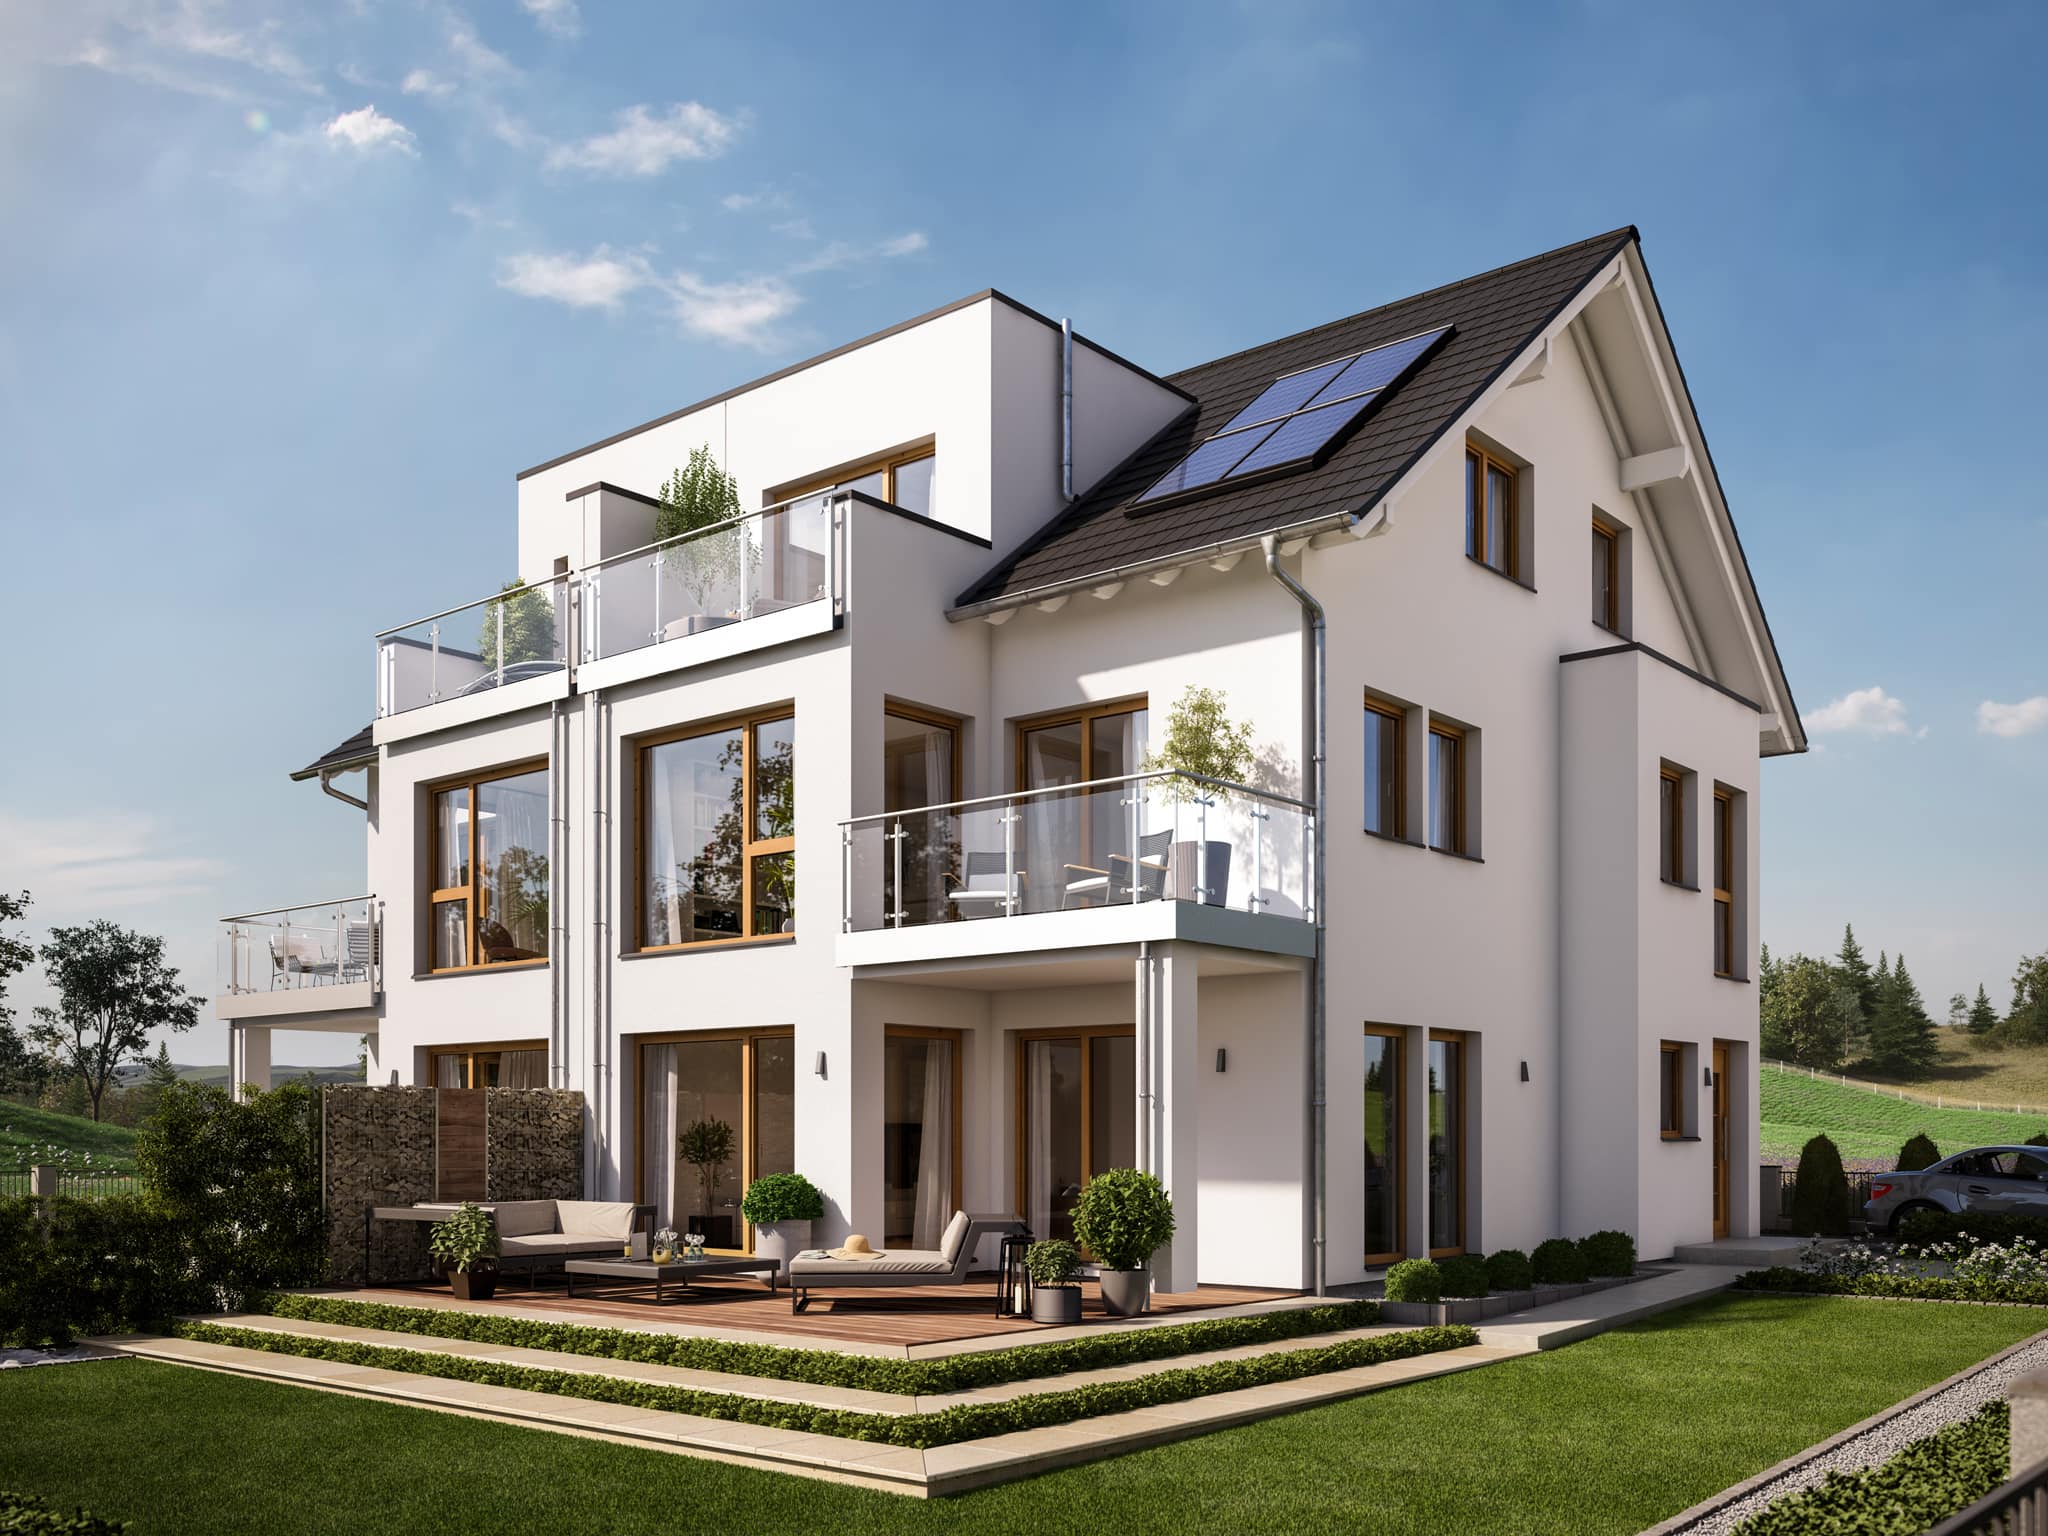 Doppelhaus modern mit Satteldach, dreigeschossig, 7 Zimmer Grundriss, 170 qm - Fertighaus Bien Zenker CELEBRATION 122 V3 XL - HausbauDirekt.de